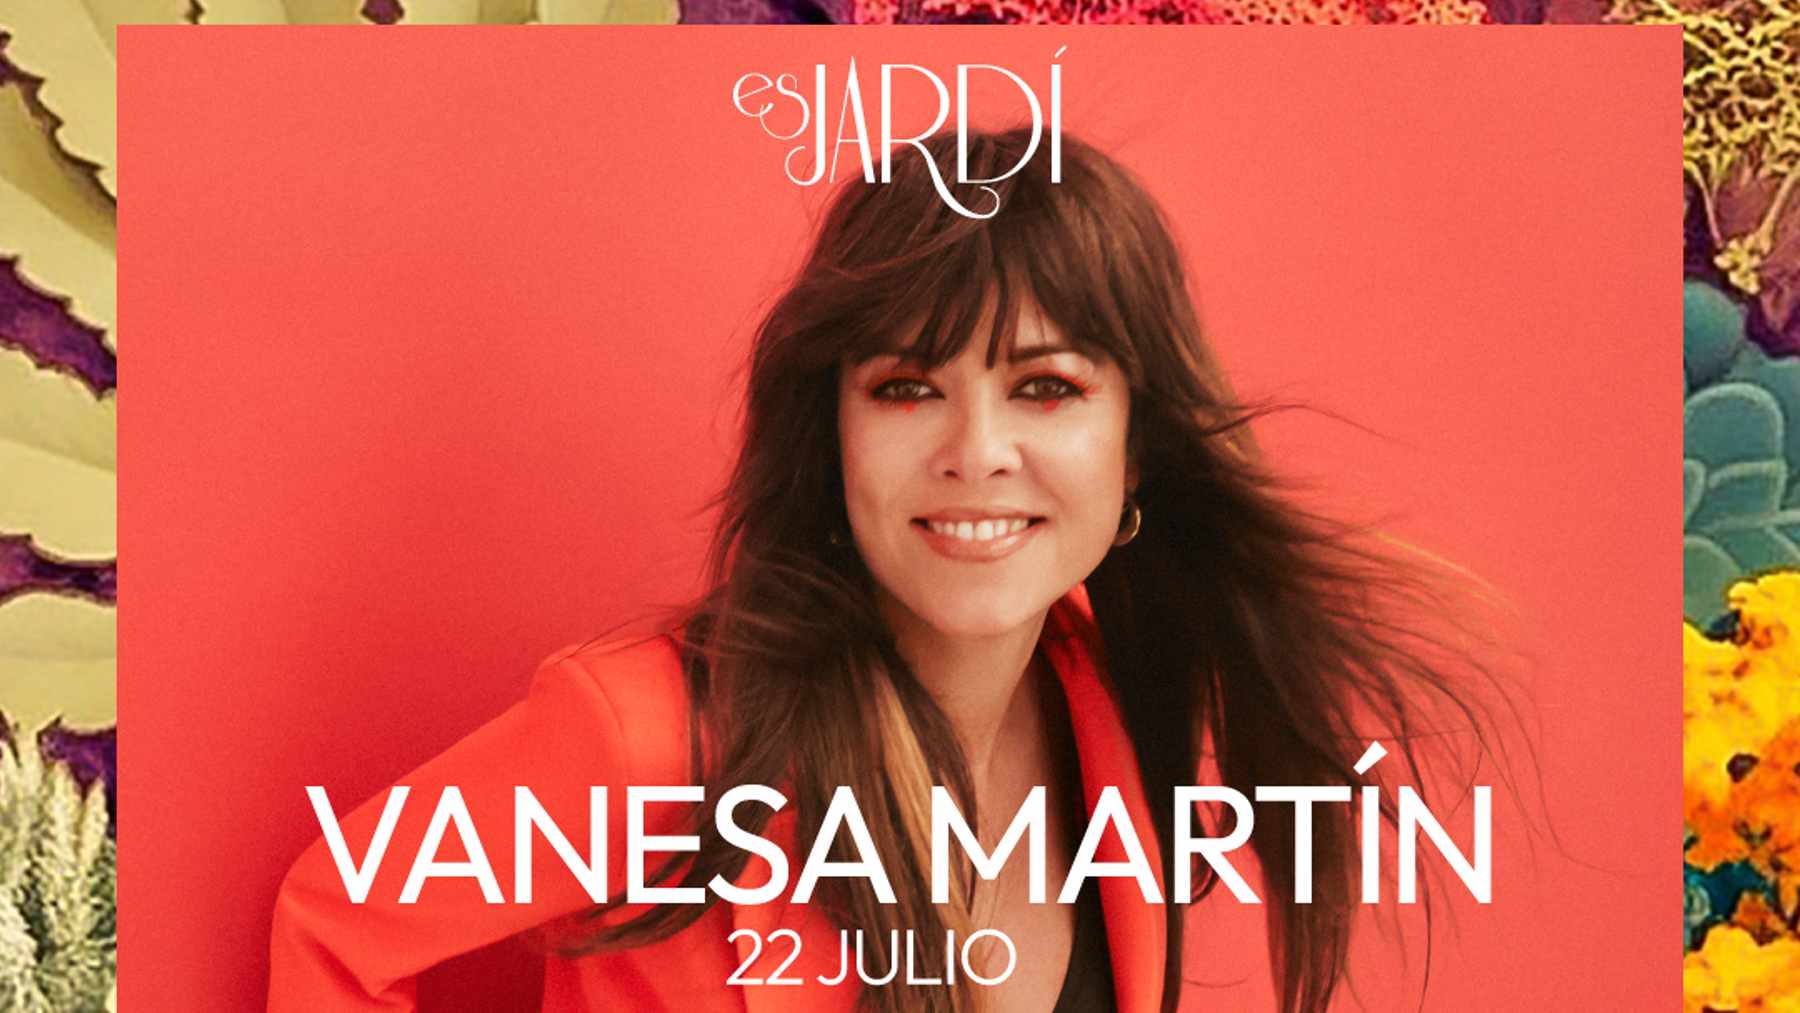 La cantante Vanesa Martín actúa el sábado 22 de julio en Es Jardí